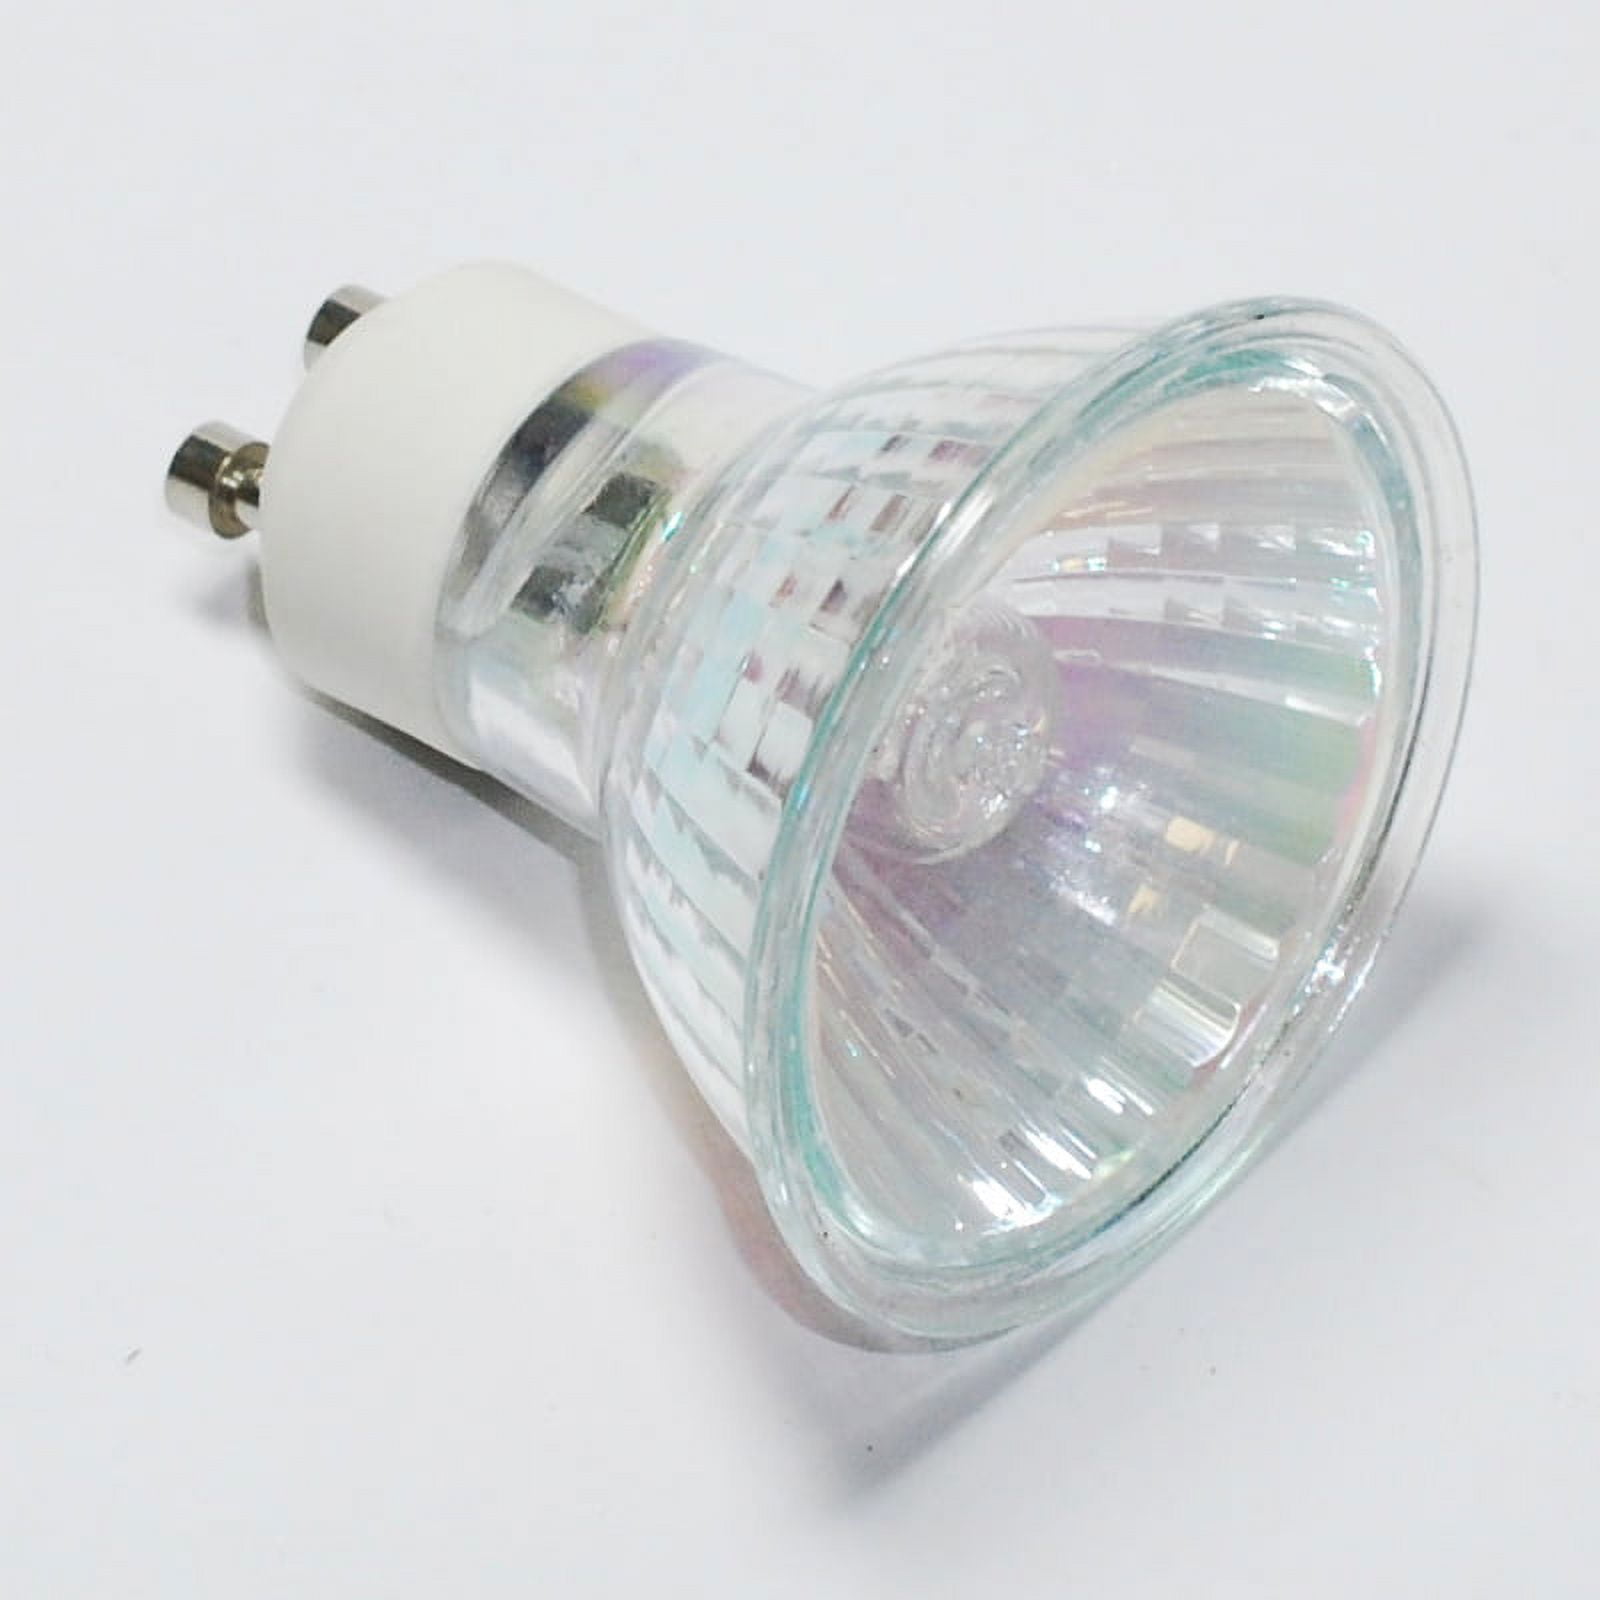 Sylvania LED Accent GU10 Flood LED Light Bulb for Vent Hood – eBuilderDirect